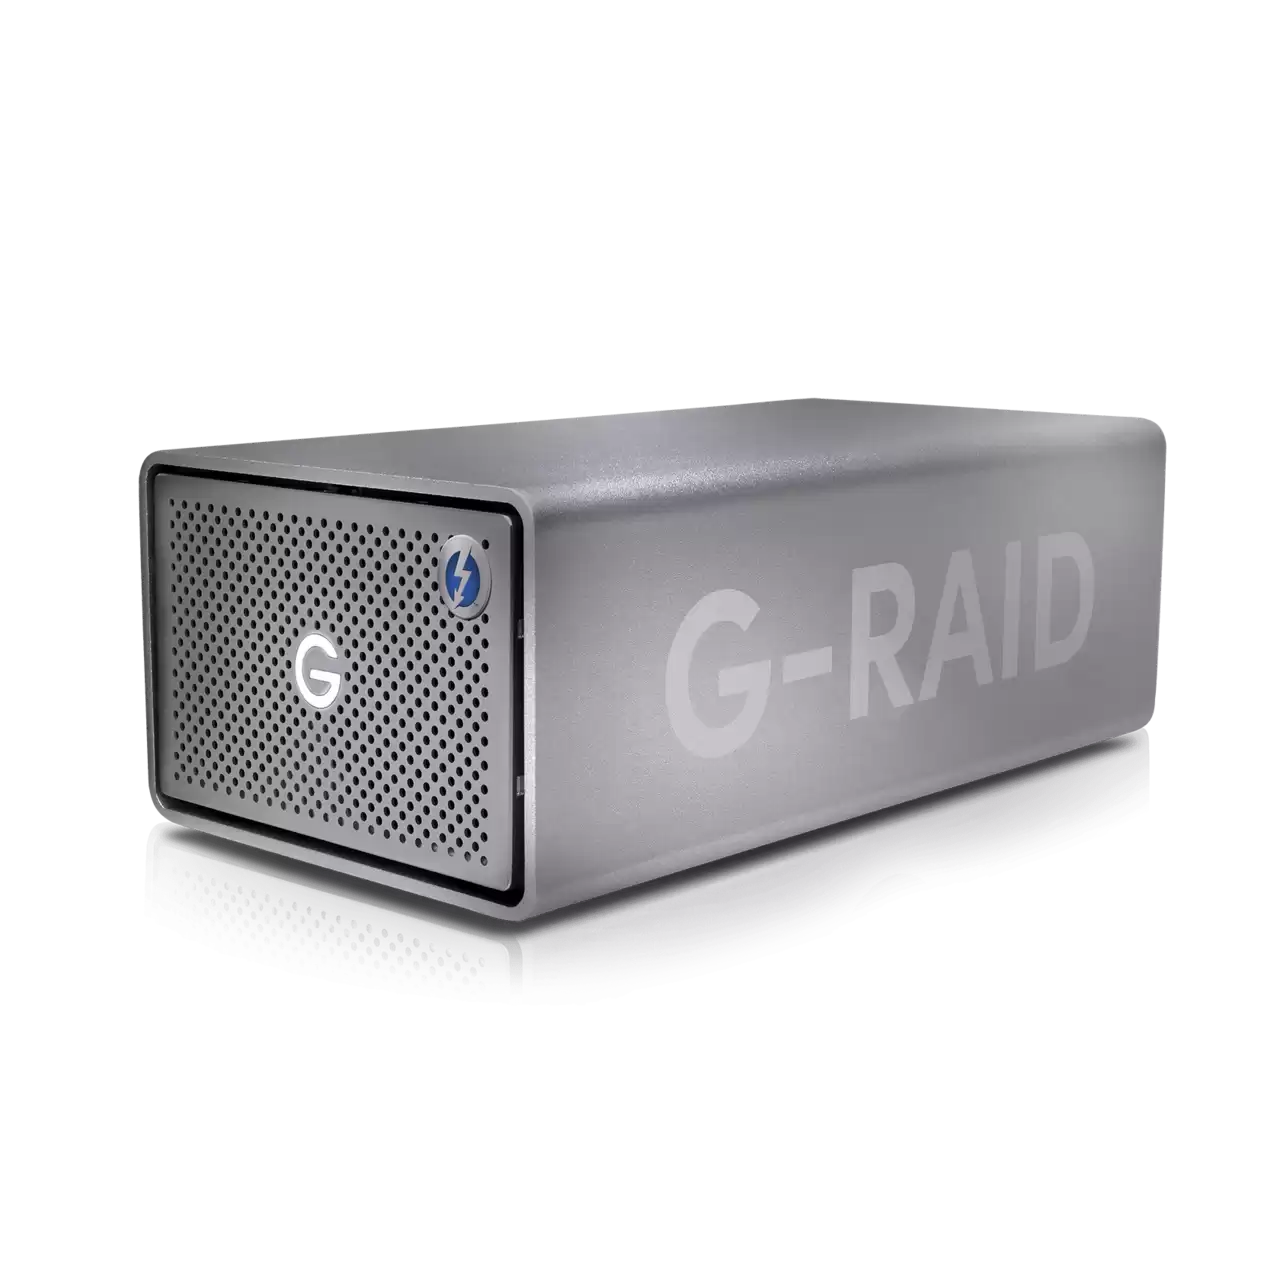 G-RAID SHUTTLE 4 80TB